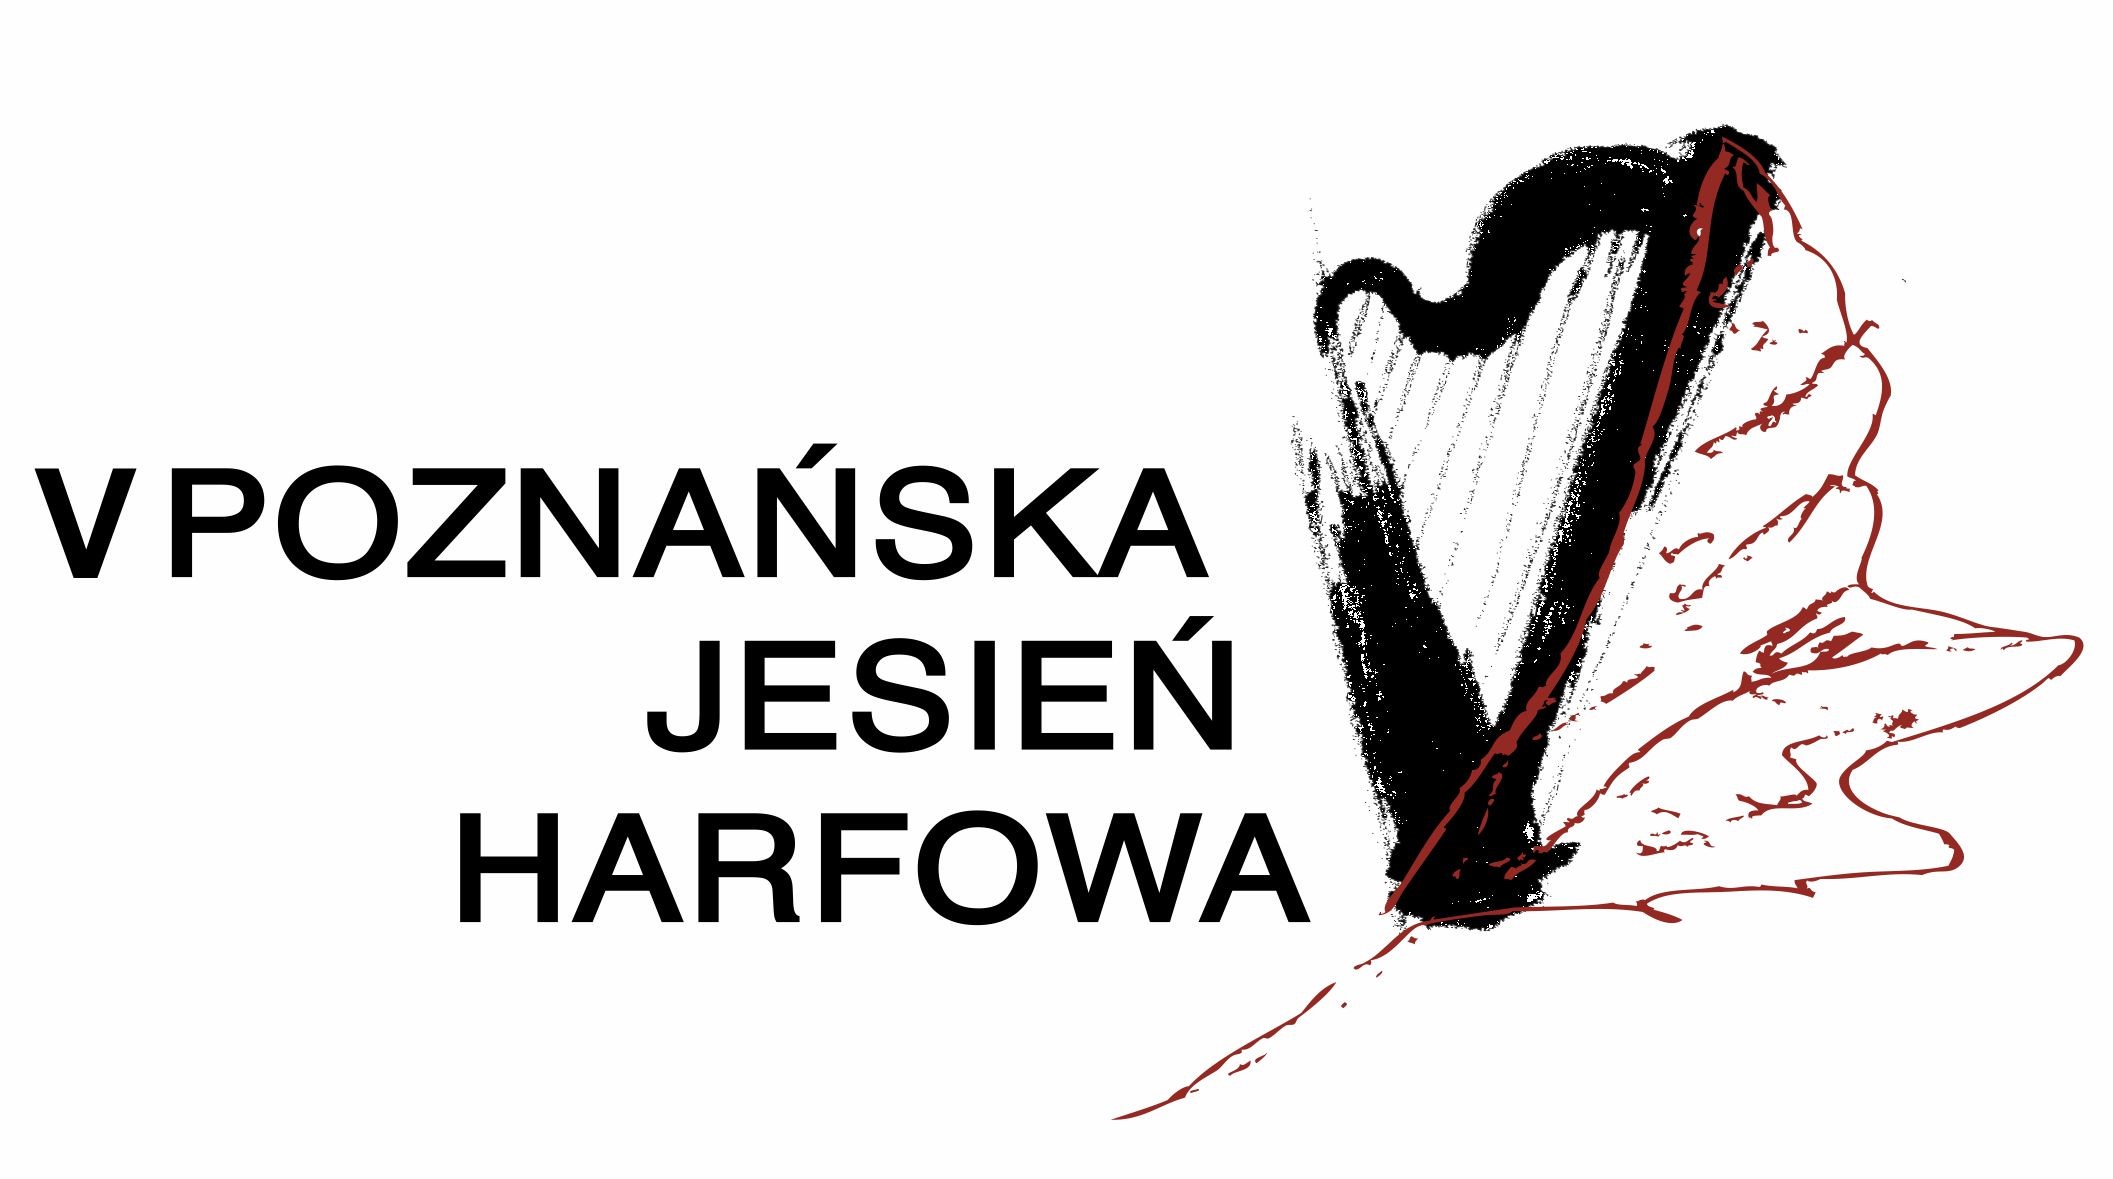 Czarno-białe logo przedstawia szkic harfy i tytuł wydarzenia - Poznańska Jesień Harfowa